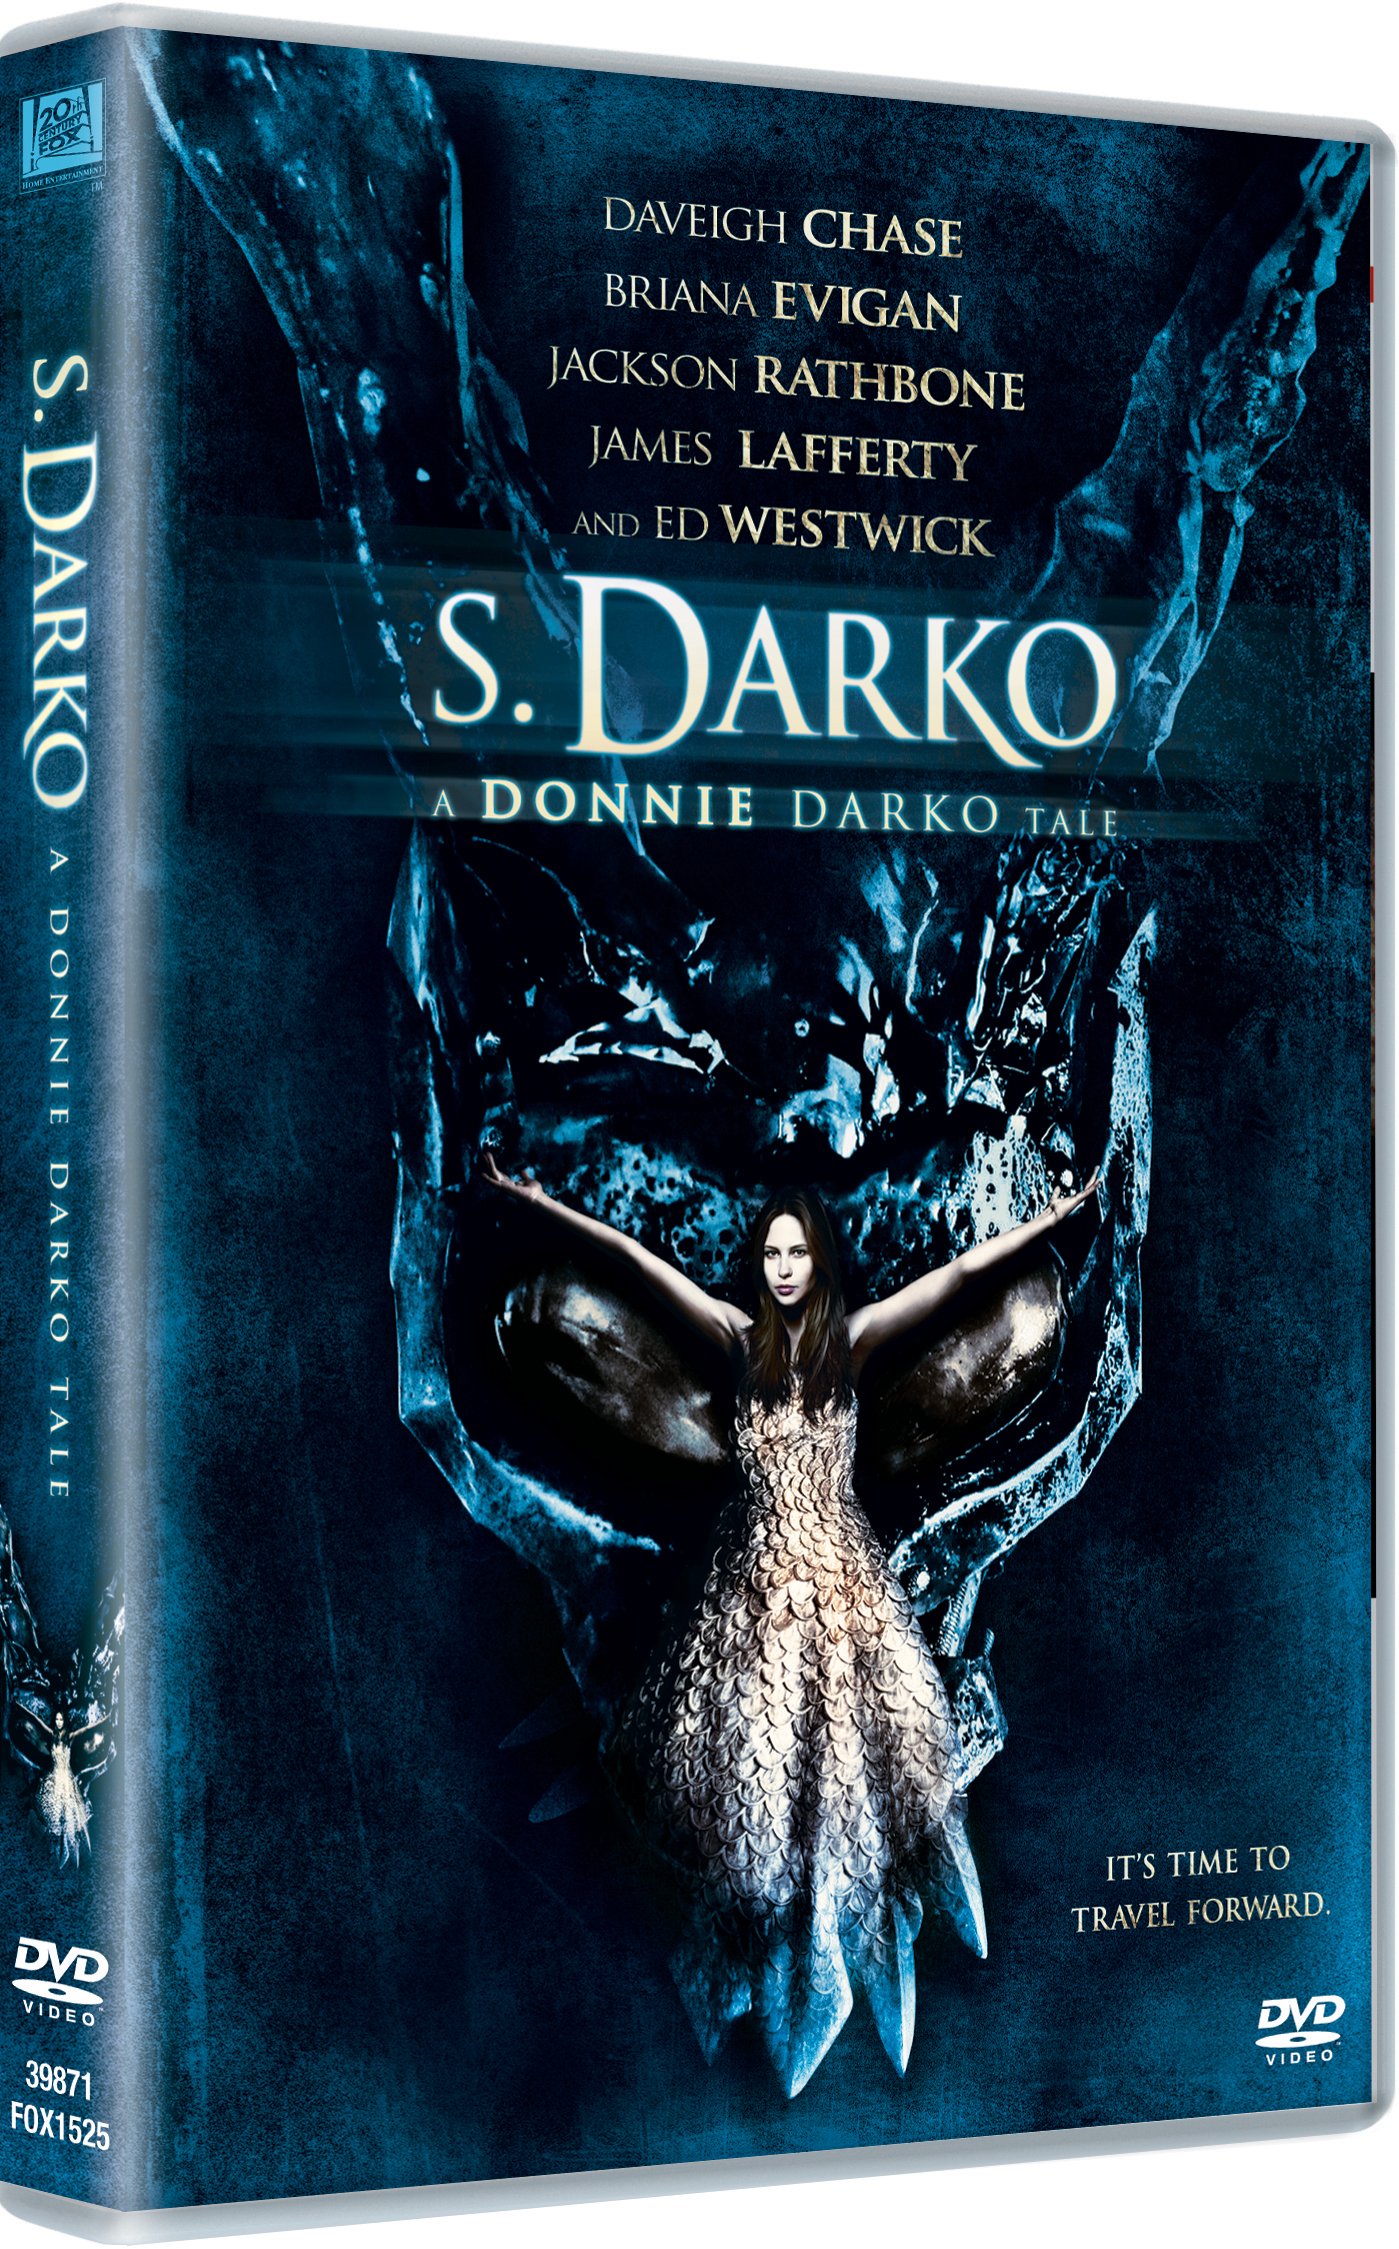 s-darko-dvd-movie-purchase-or-watch-online